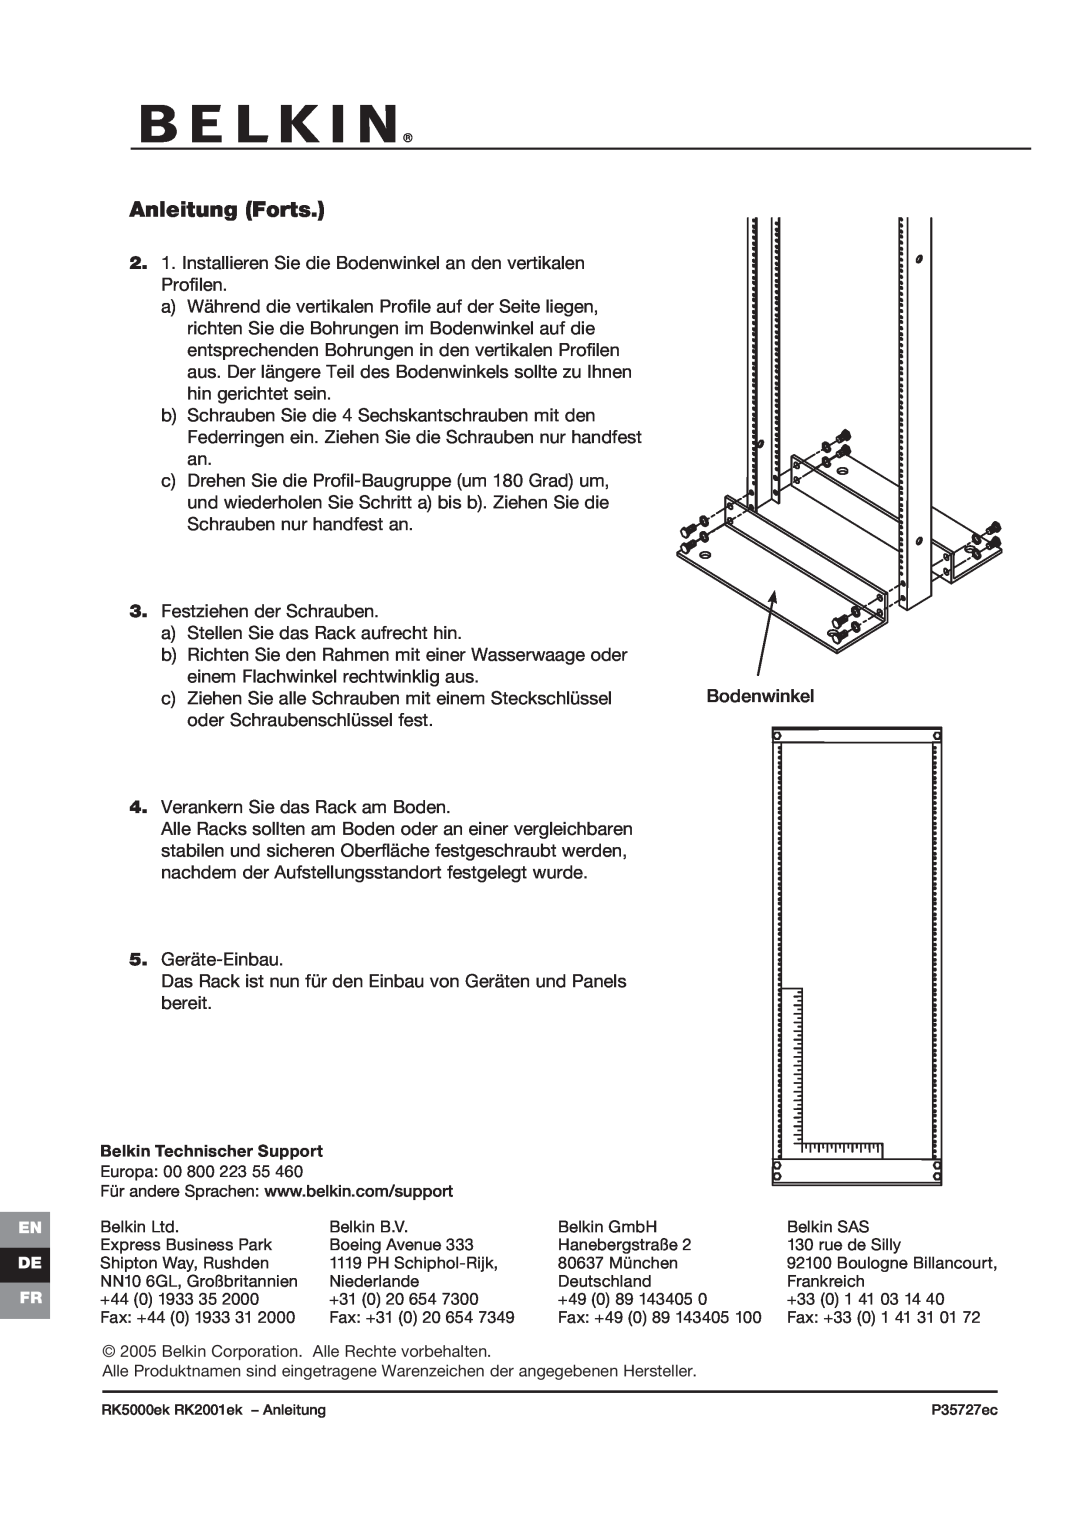 Belkin RK2000ek, RK2001ek, RK5000ek, P35727ec manual Anleitung Forts 